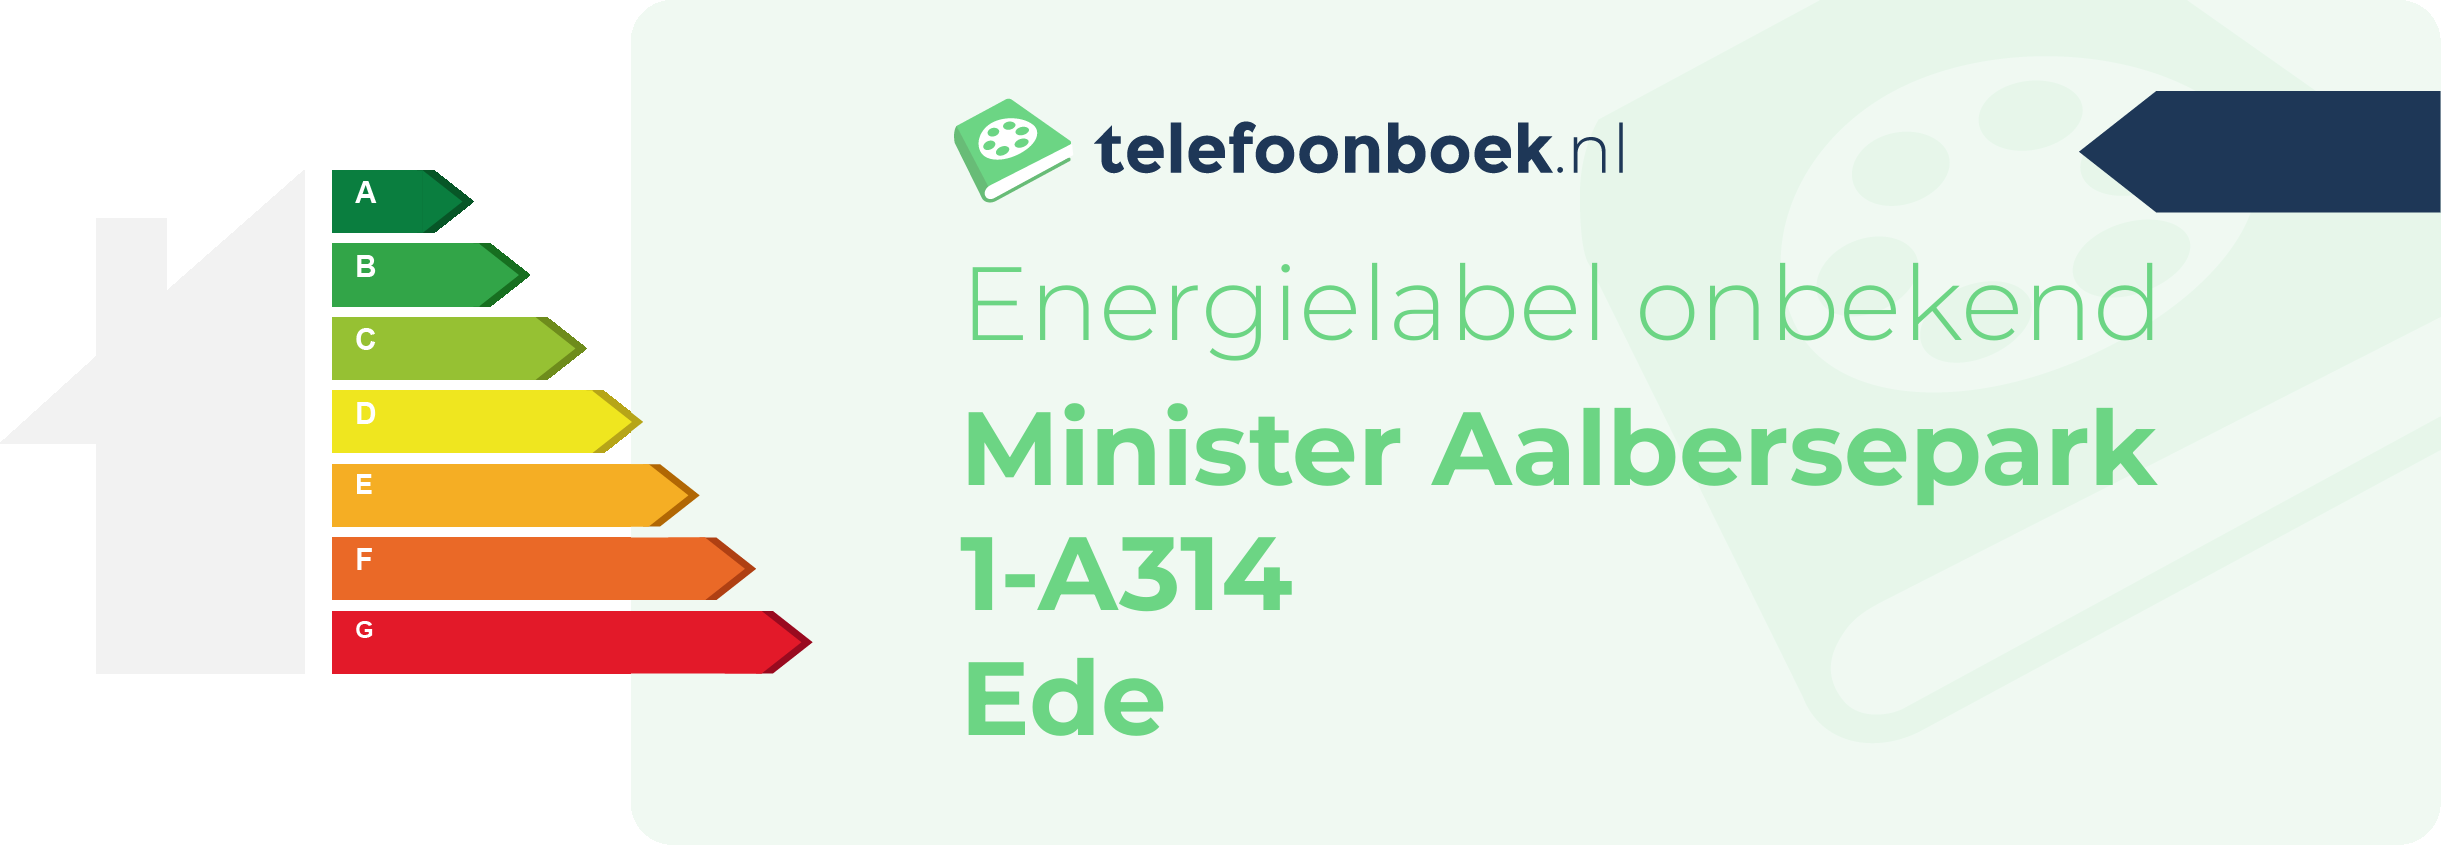 Energielabel Minister Aalbersepark 1-A314 Ede